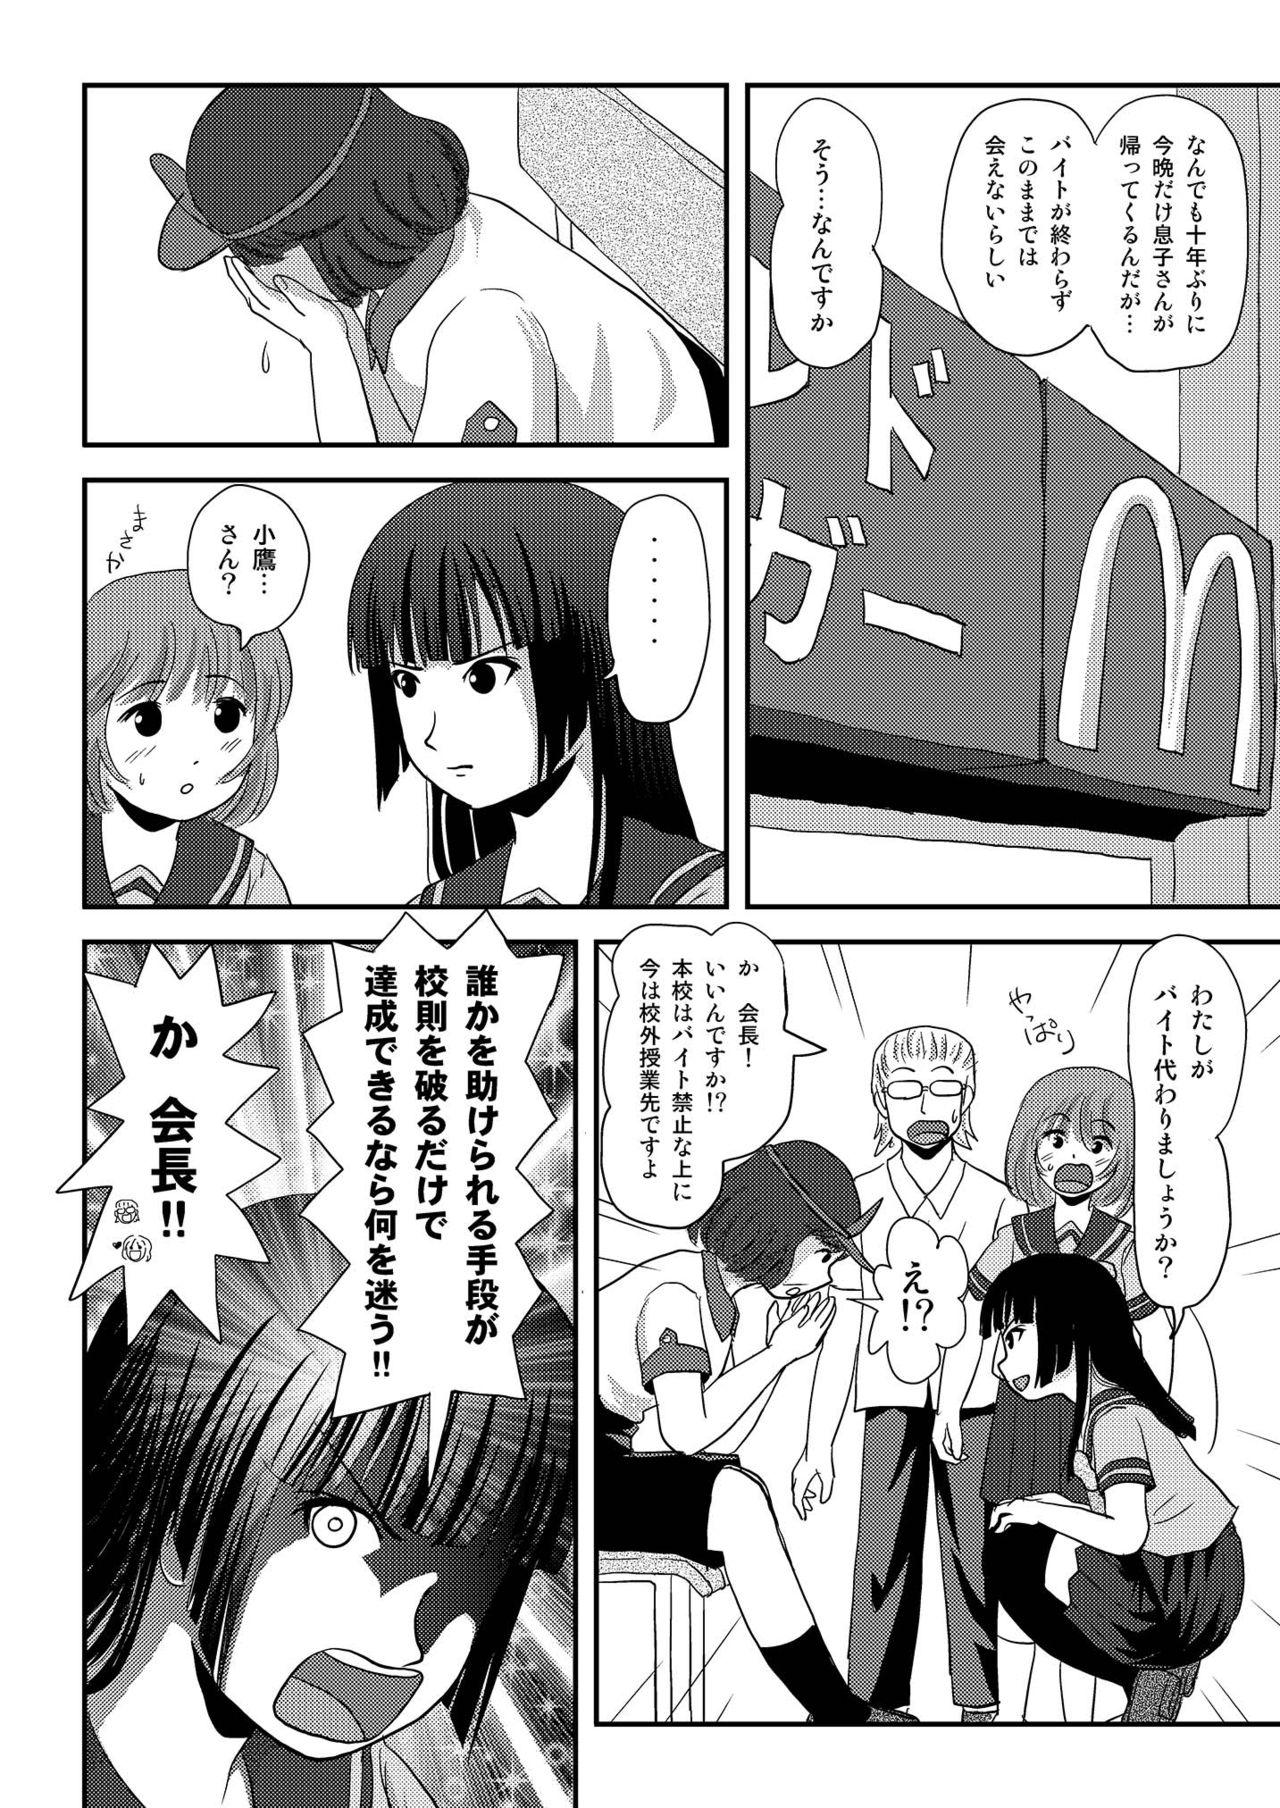 Doggystyle Sakura Kotaka no Roshutsubiyori 6 - Original Big Dicks - Page 12